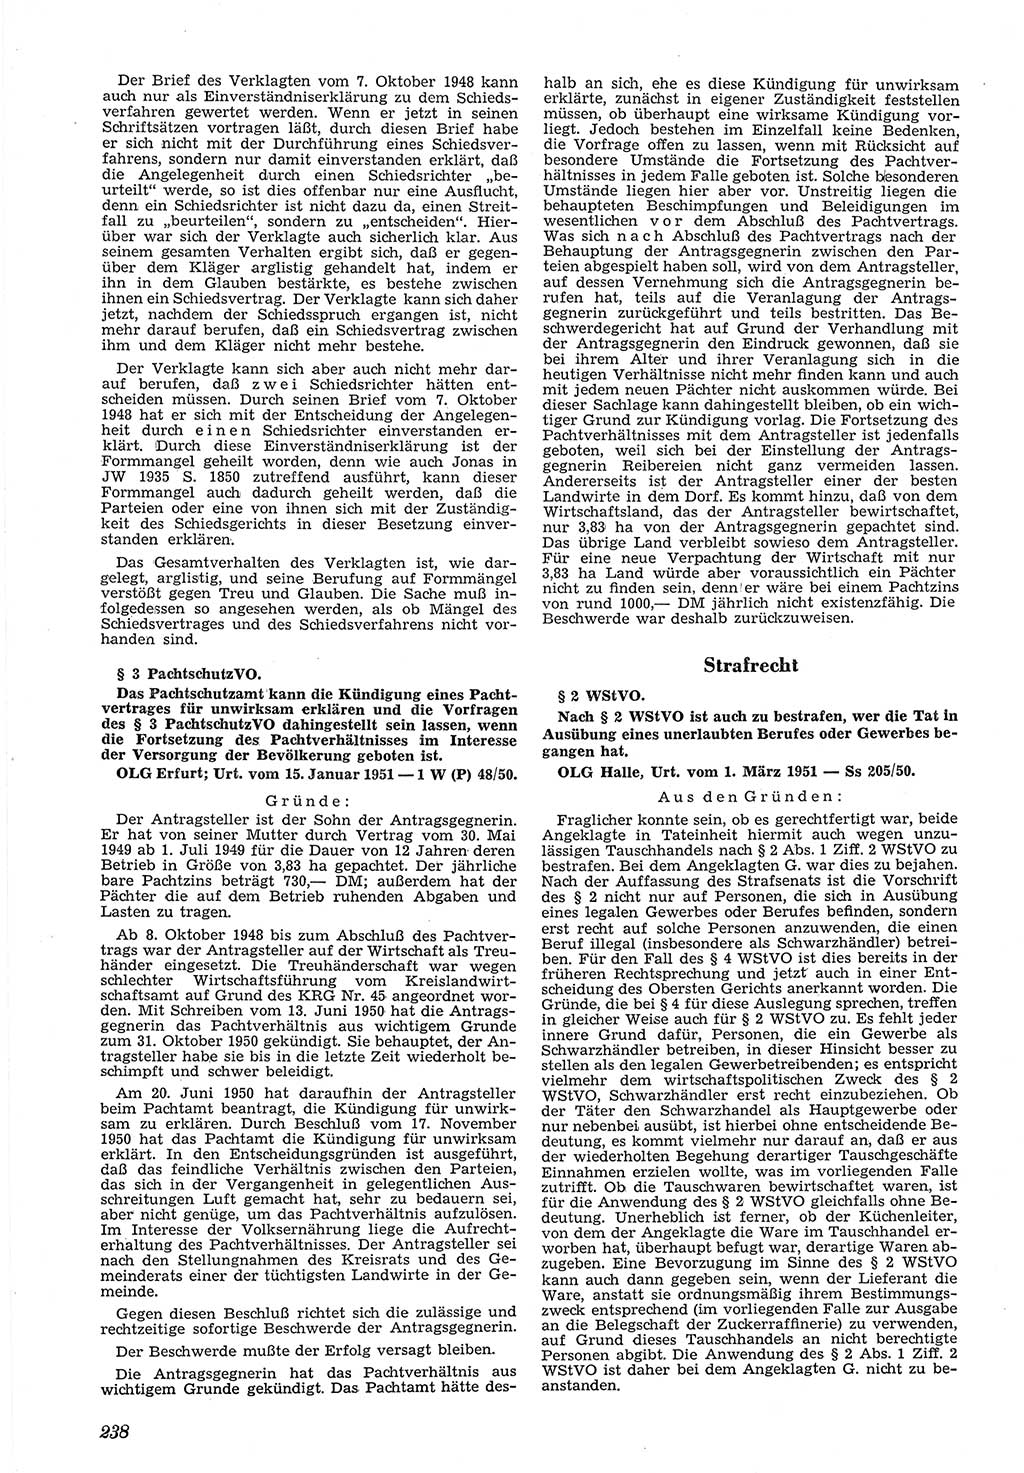 Neue Justiz (NJ), Zeitschrift für Recht und Rechtswissenschaft [Deutsche Demokratische Republik (DDR)], 5. Jahrgang 1951, Seite 238 (NJ DDR 1951, S. 238)